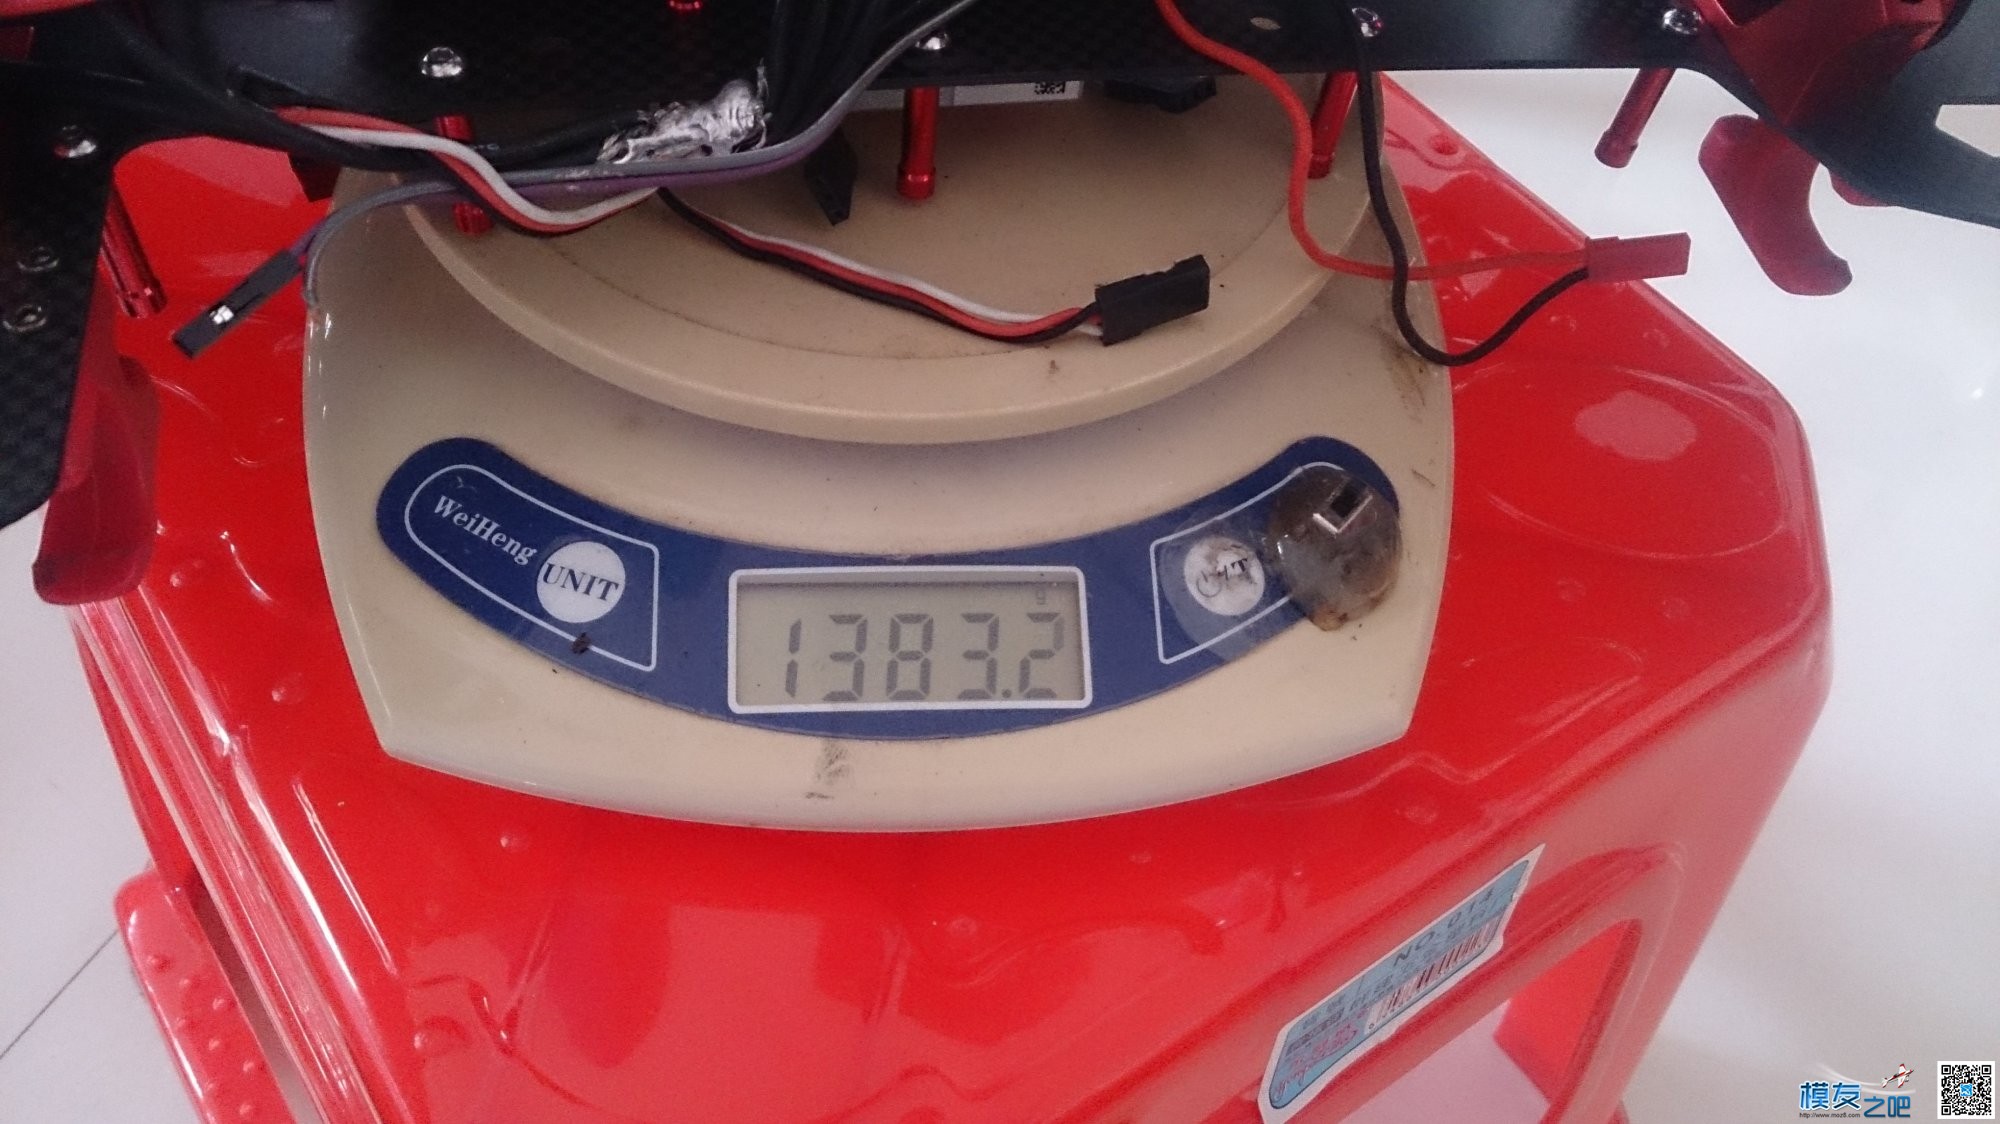 H4 680调试（帮别人调试的） 电池,充电器,云台,飞控,电调 作者:啊诺 696 